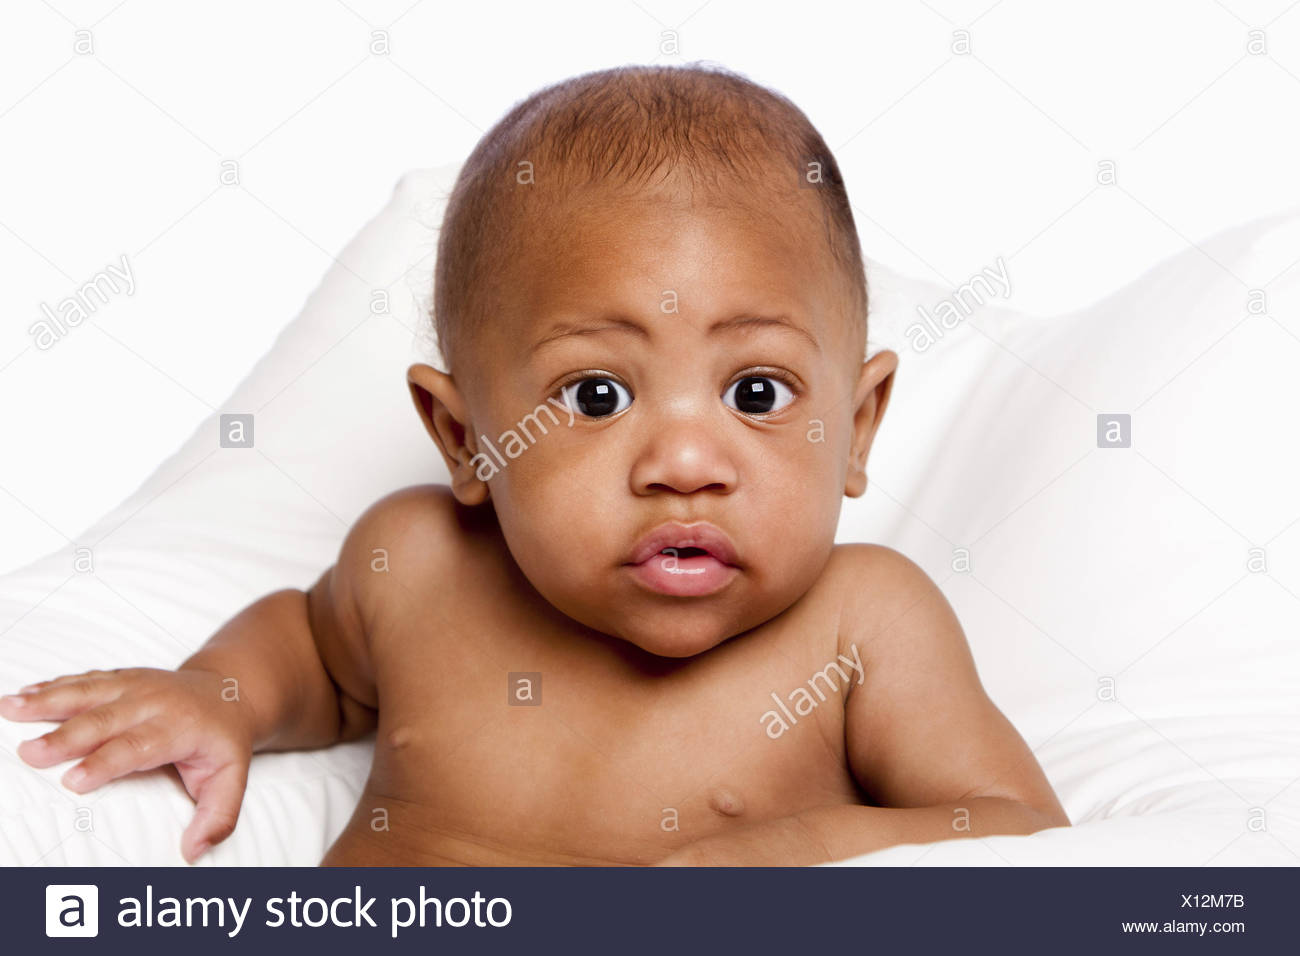 Beau Mignon Adorable Bebe Africain Face Avec Des Yeux Enormes Sur Blanc Photo Stock Alamy